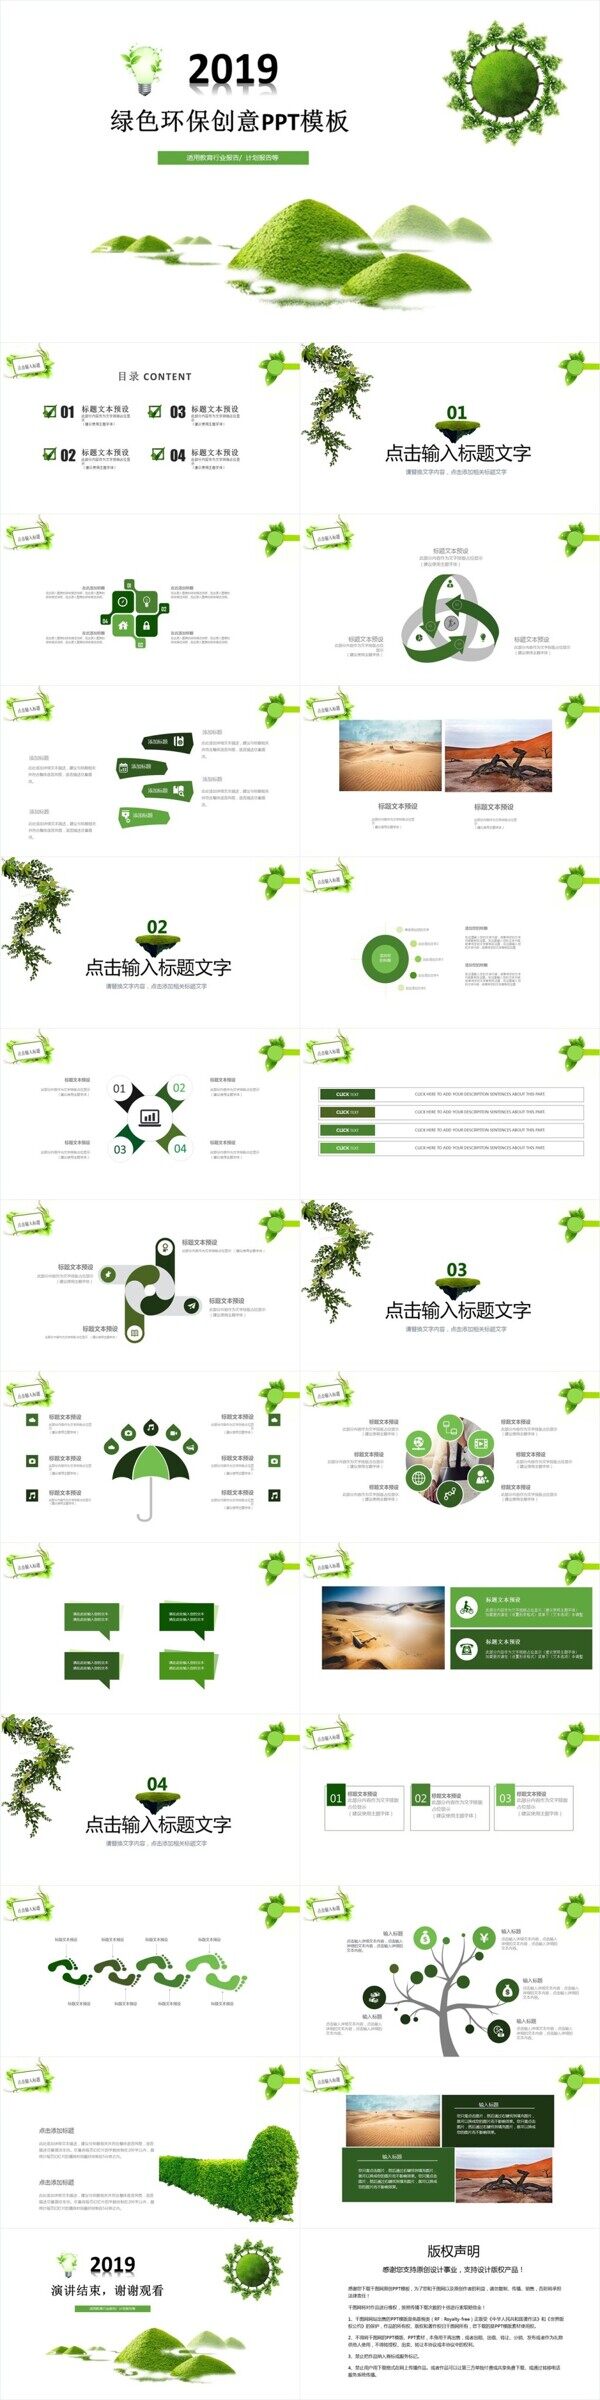 2019绿色环保创意ppt贴图